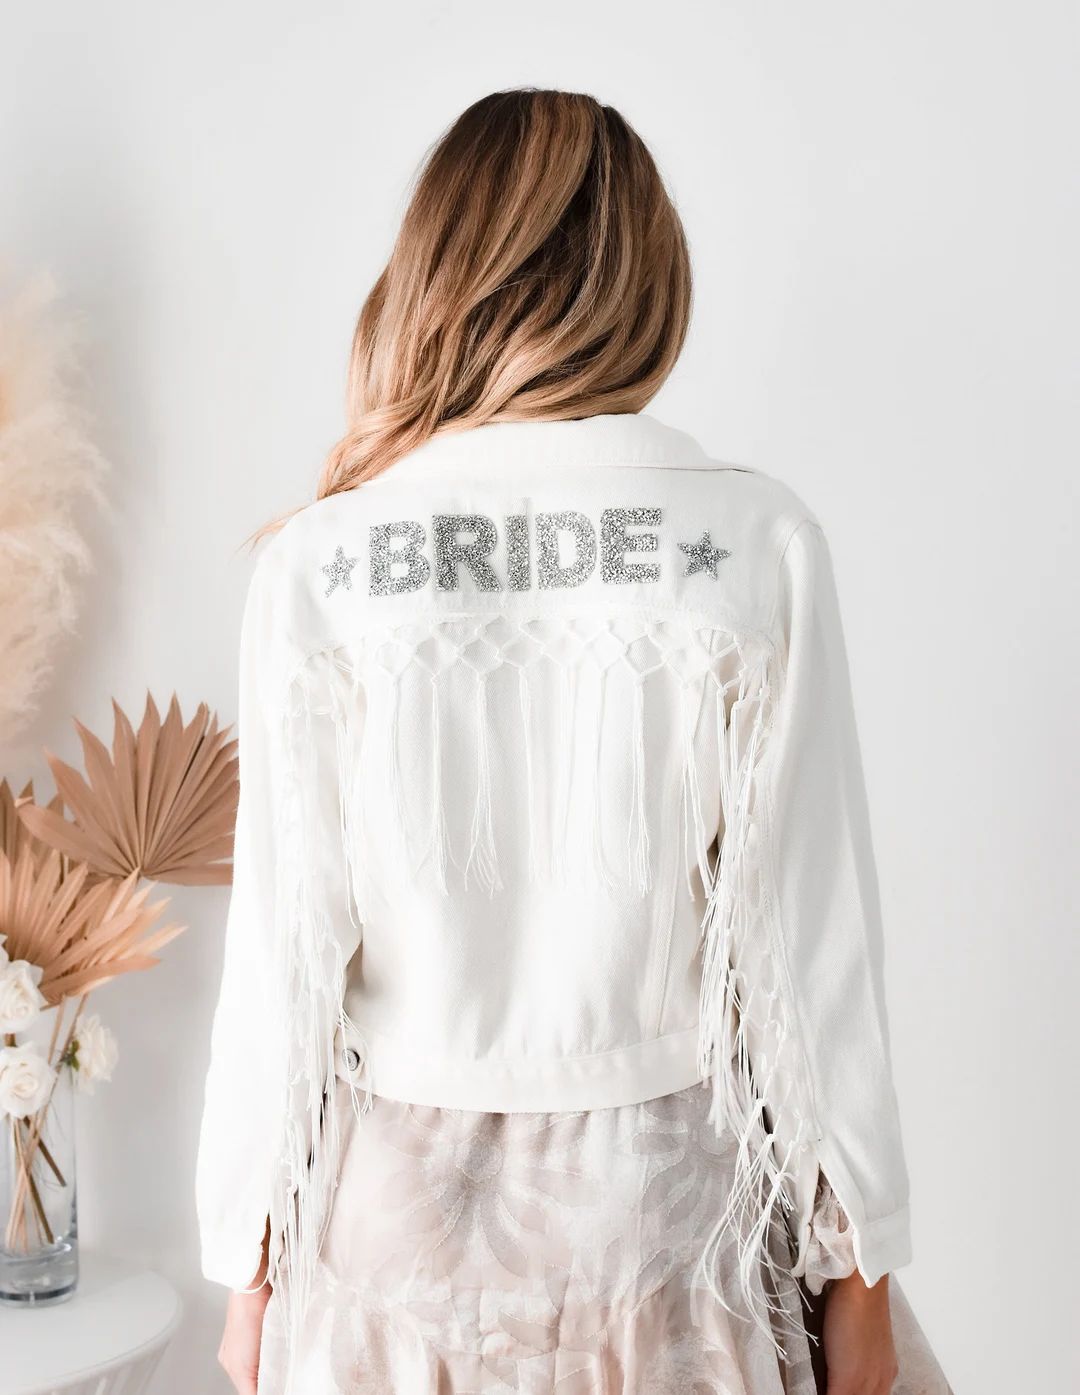 Fringe Jacket Personalized Bride Jean Jacket With Tassel Fringe Western Wedding Jacket Bridal Sho... | Etsy (US)